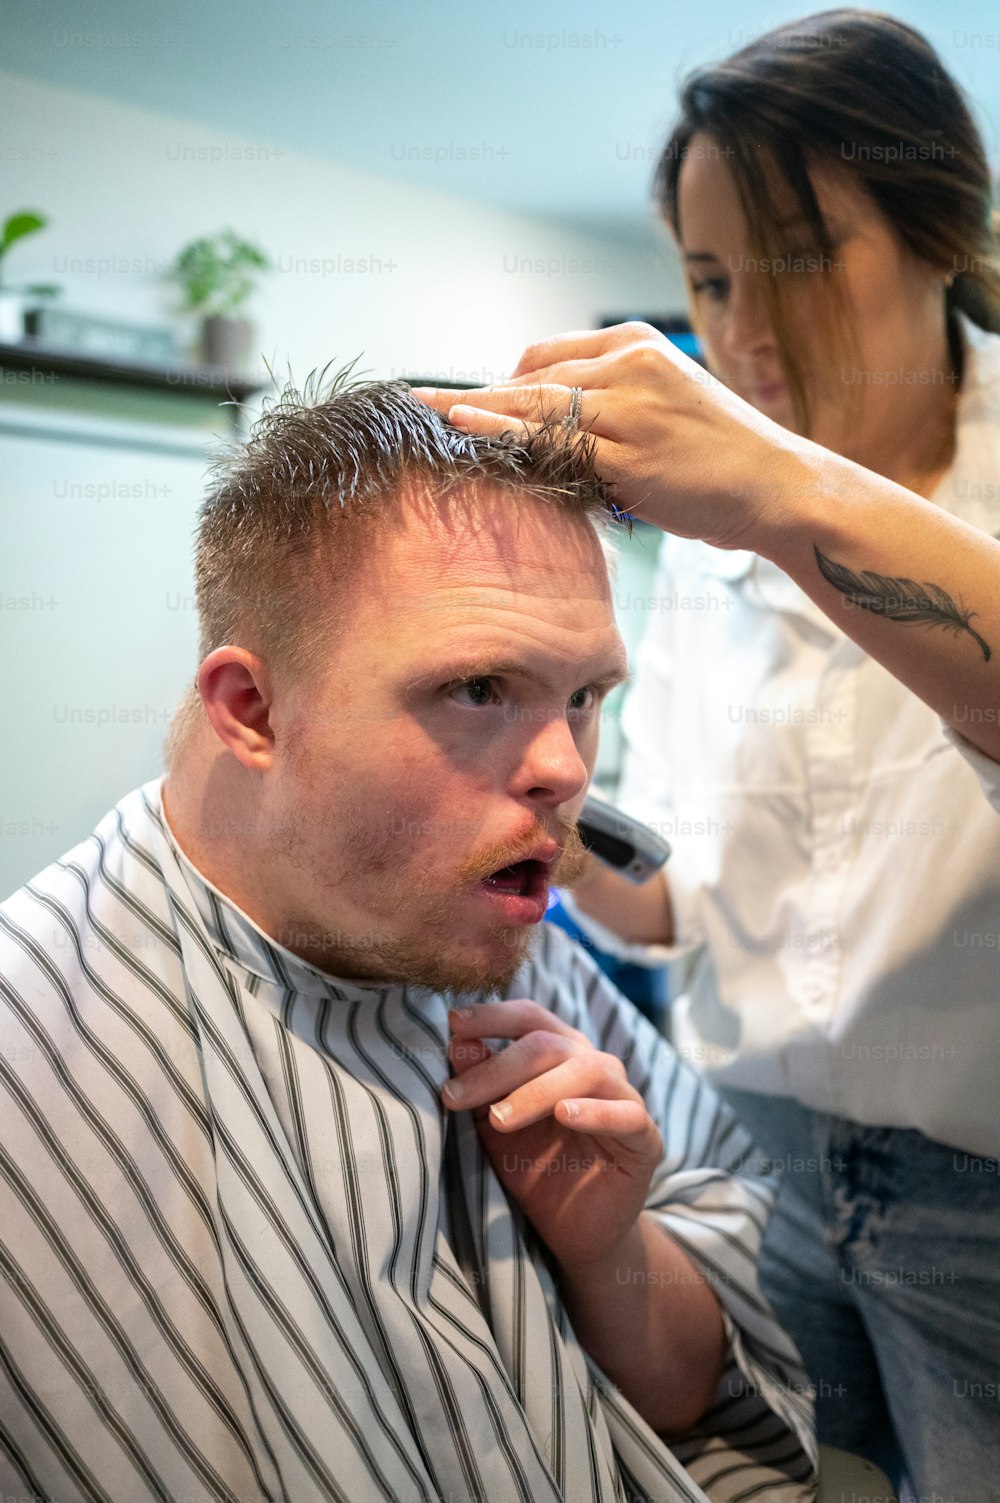 Un homme se fait couper les cheveux par une femme